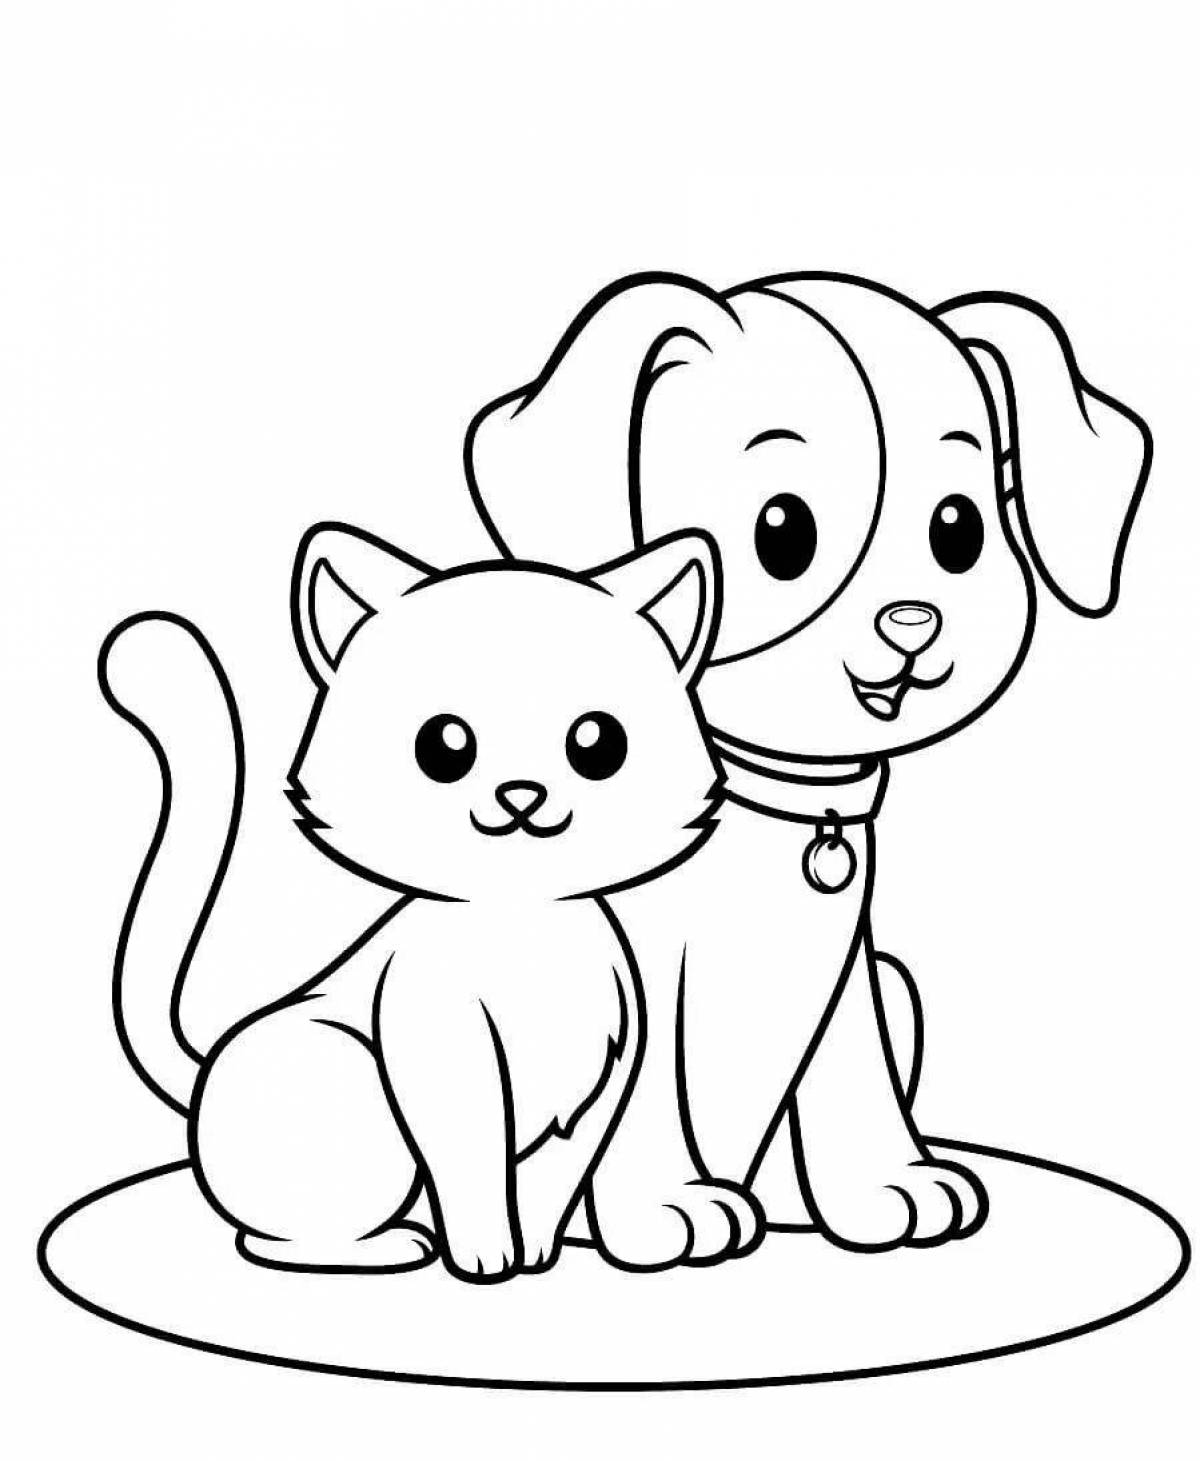 Раскраска Собака и кошка - распечатать бесплатно для детей ??